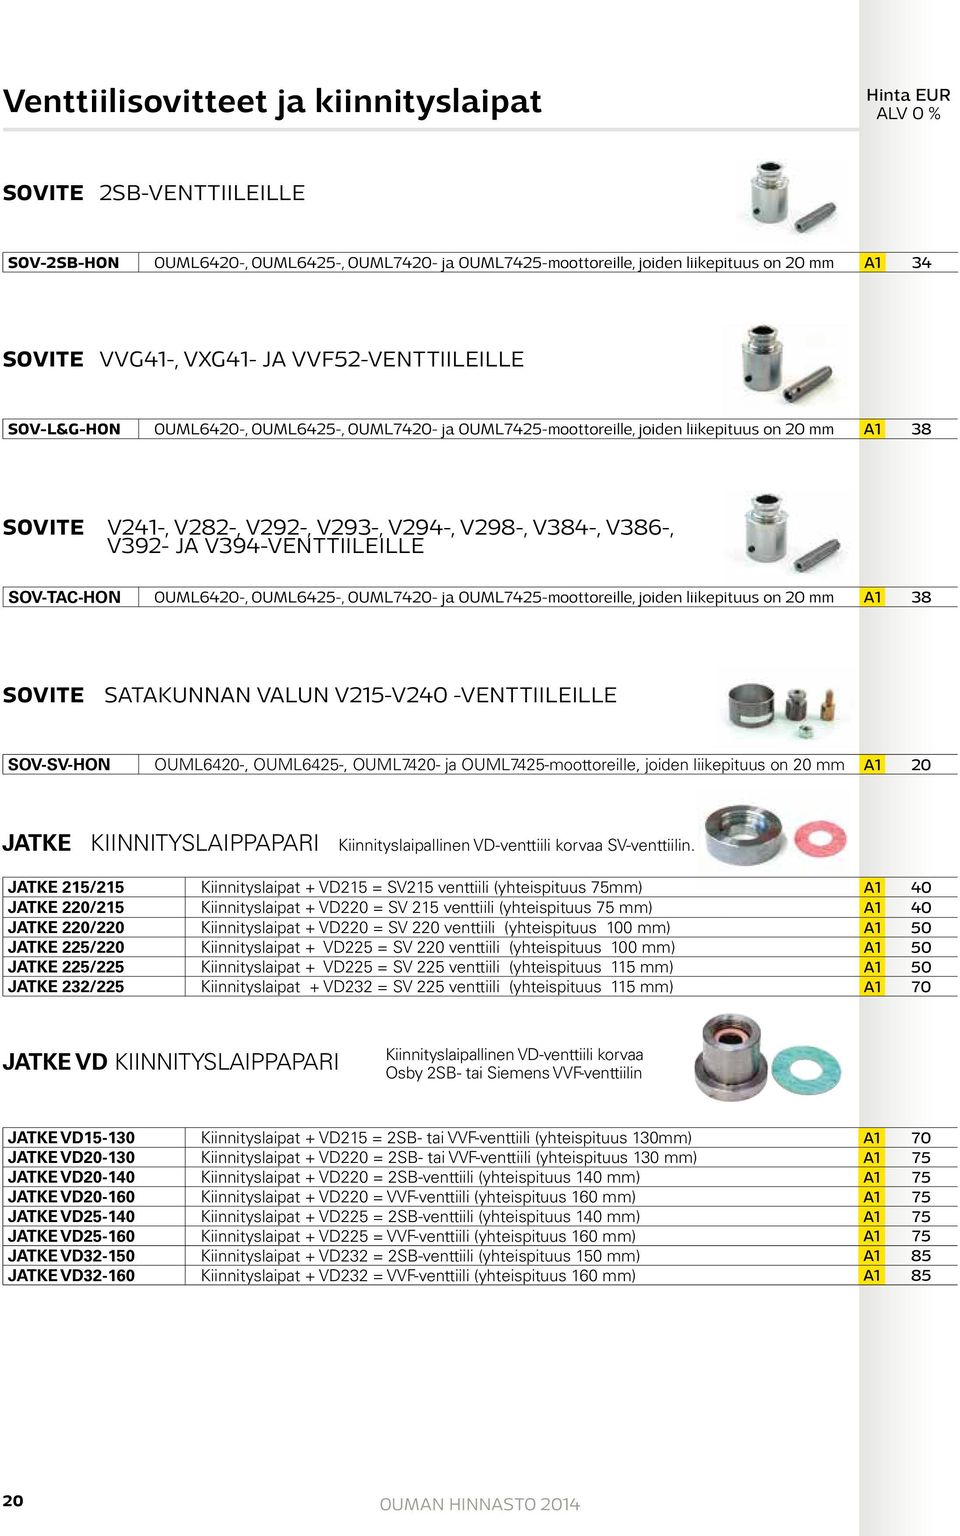 V394-VENTTIILEILLE SOV-TAC-HON OUML6420-, OUML6425-, OUML7420- ja OUML7425-moottoreille, joiden liikepituus on 20 mm A1 38 SOVITE SATAKUNNAN VALUN V215-V240 -VENTTIILEILLE SOV-SV-HON OUML6420-,